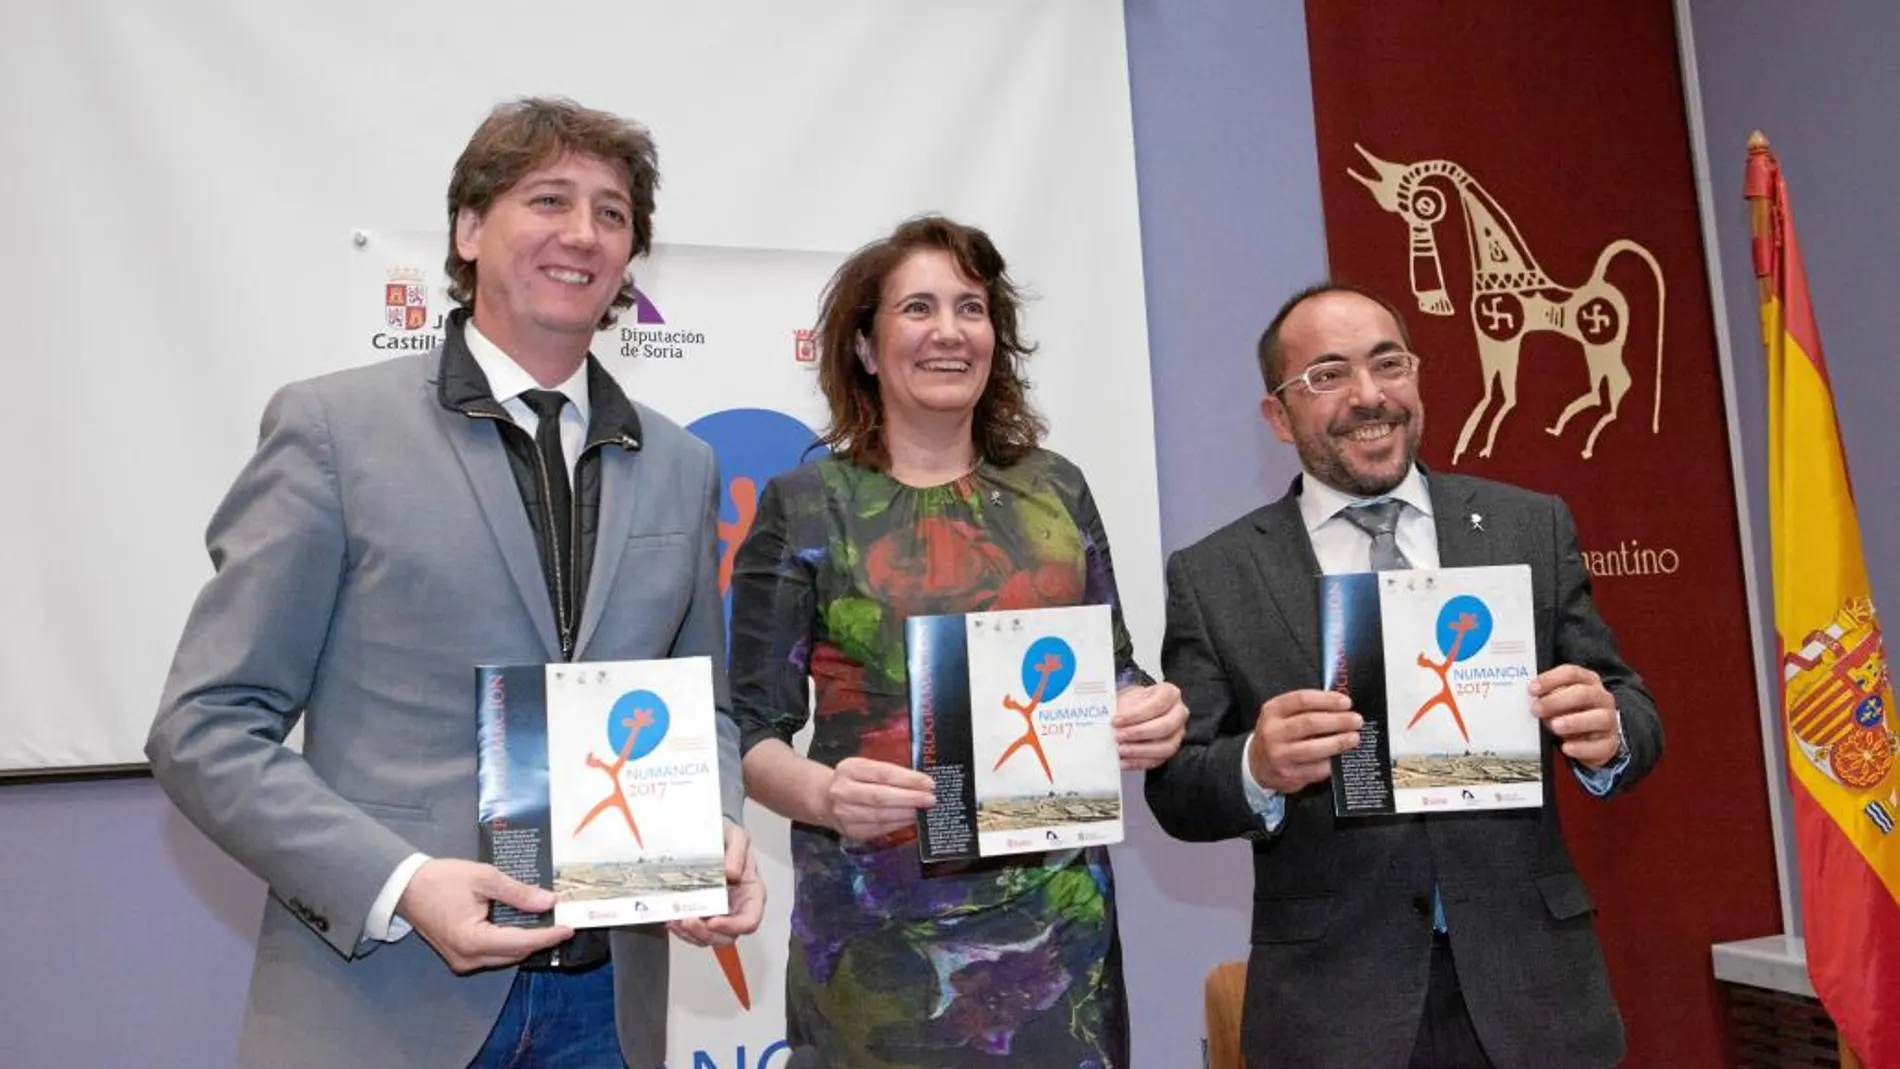 Carlos Martínez, María Josefa García Cirac y Luis Rey presentan los actos conmemorativos de Numancia 2017